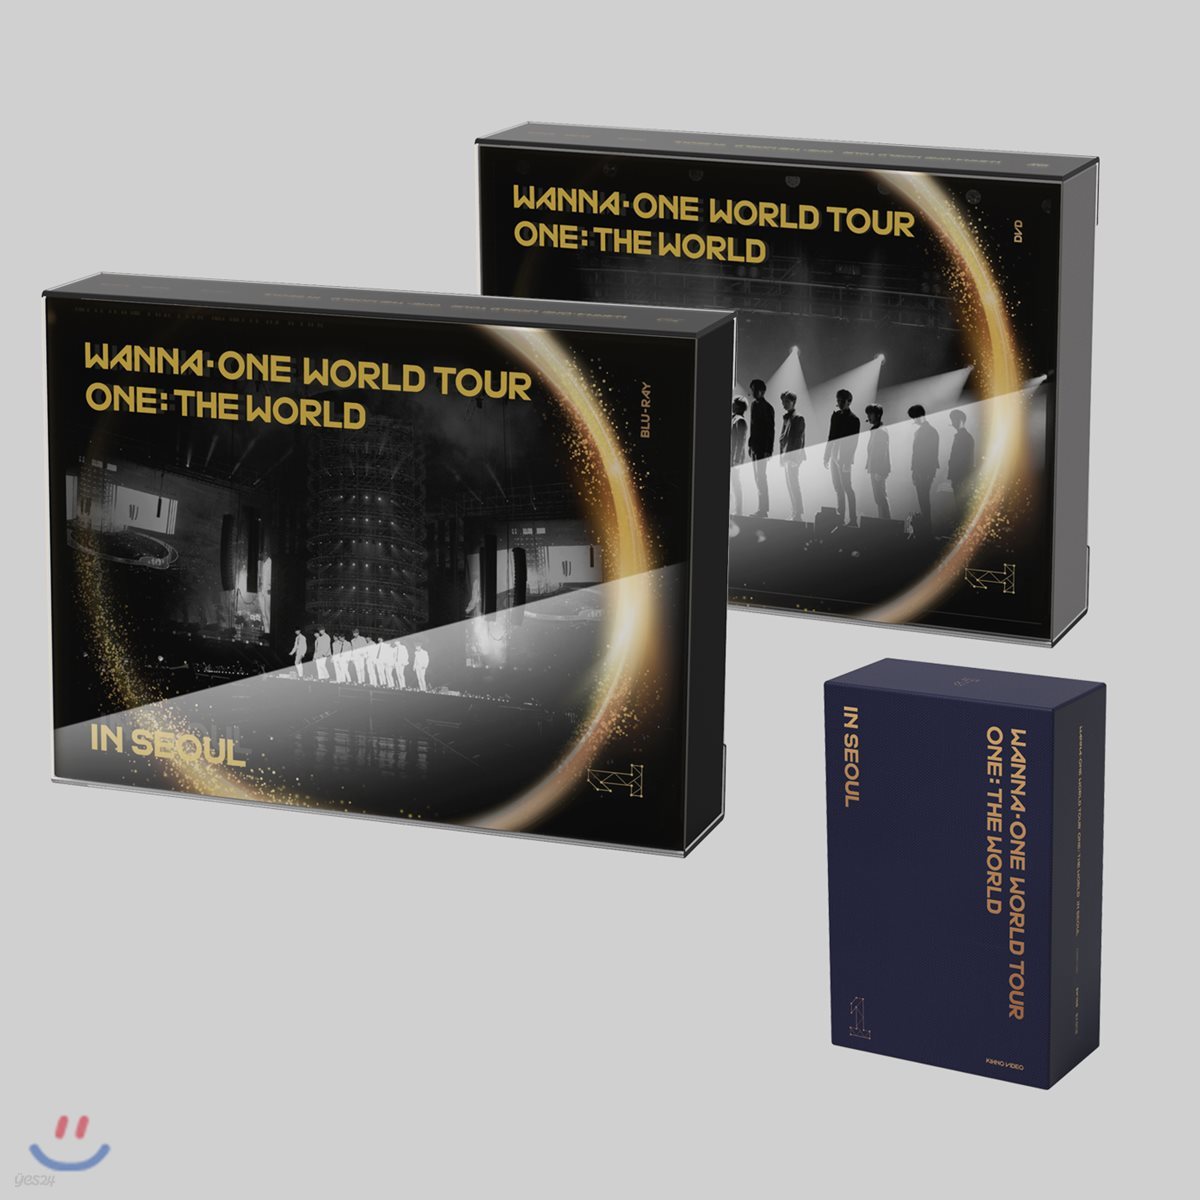 워너원 (Wanna One) - 워너원 월드투어 원: 더 월드 인 서울 Wanna One World Tour One: The World In Seoul [DVD+BLU-RAY+KIHNO VIDEO]